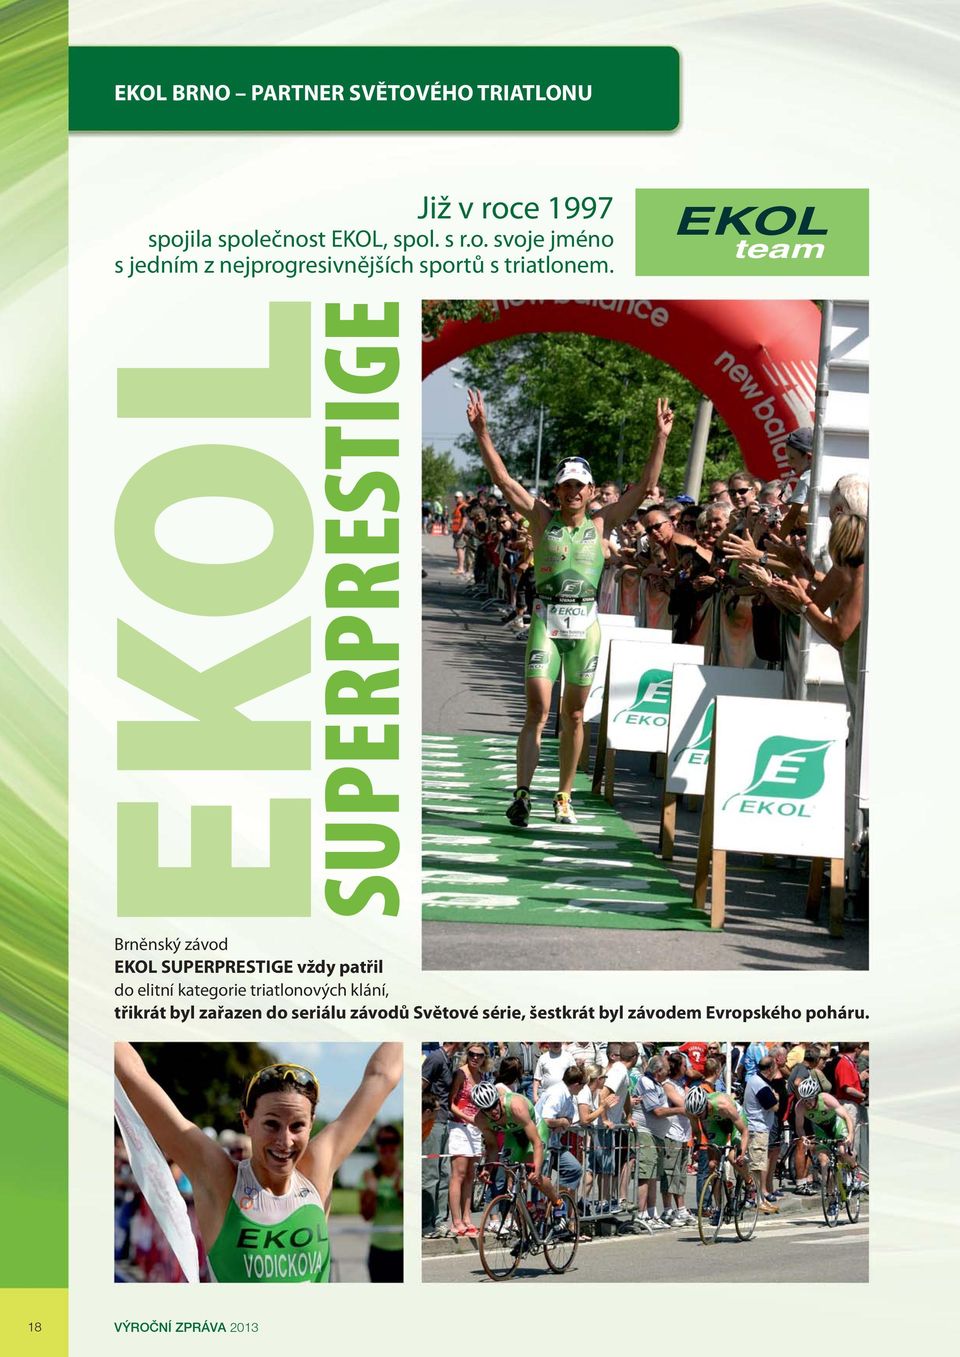 team EKOL SUPERPRESTIGE Brněnský závod EKOL SUPERPRESTIGE vždy patřil do elitní kategorie